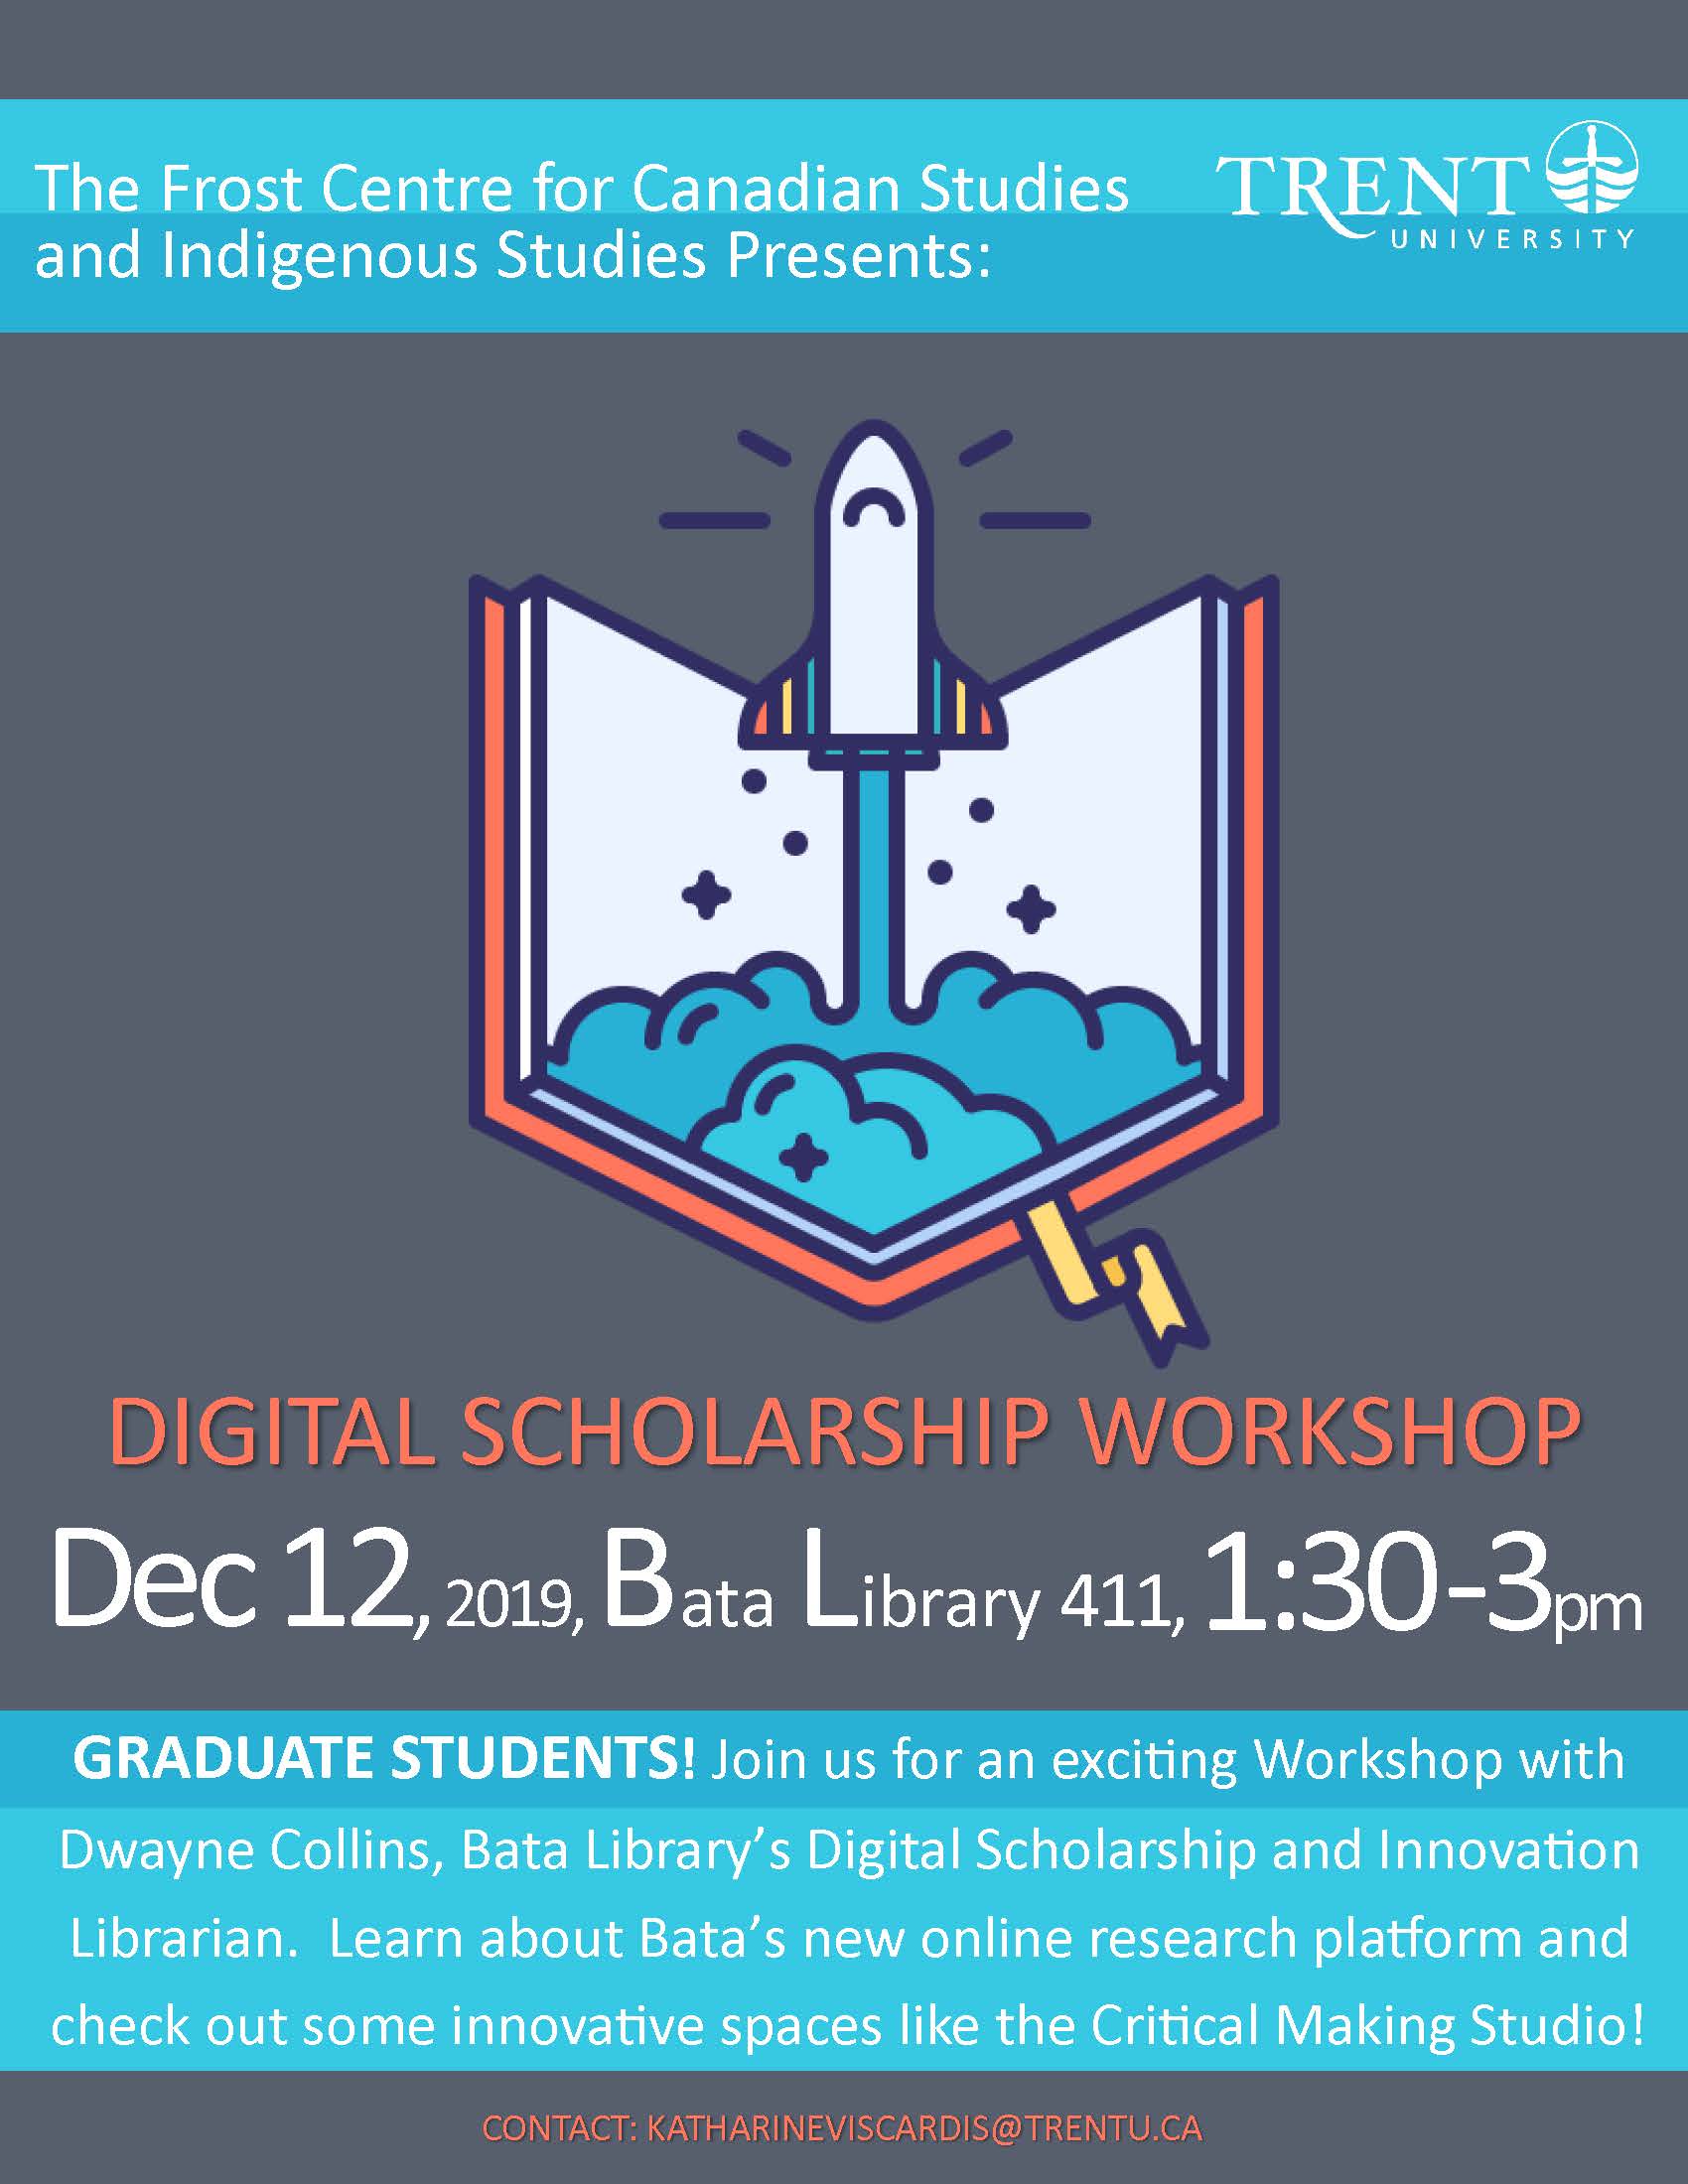 "Digital Scholarship Workshop" 12 December 2019